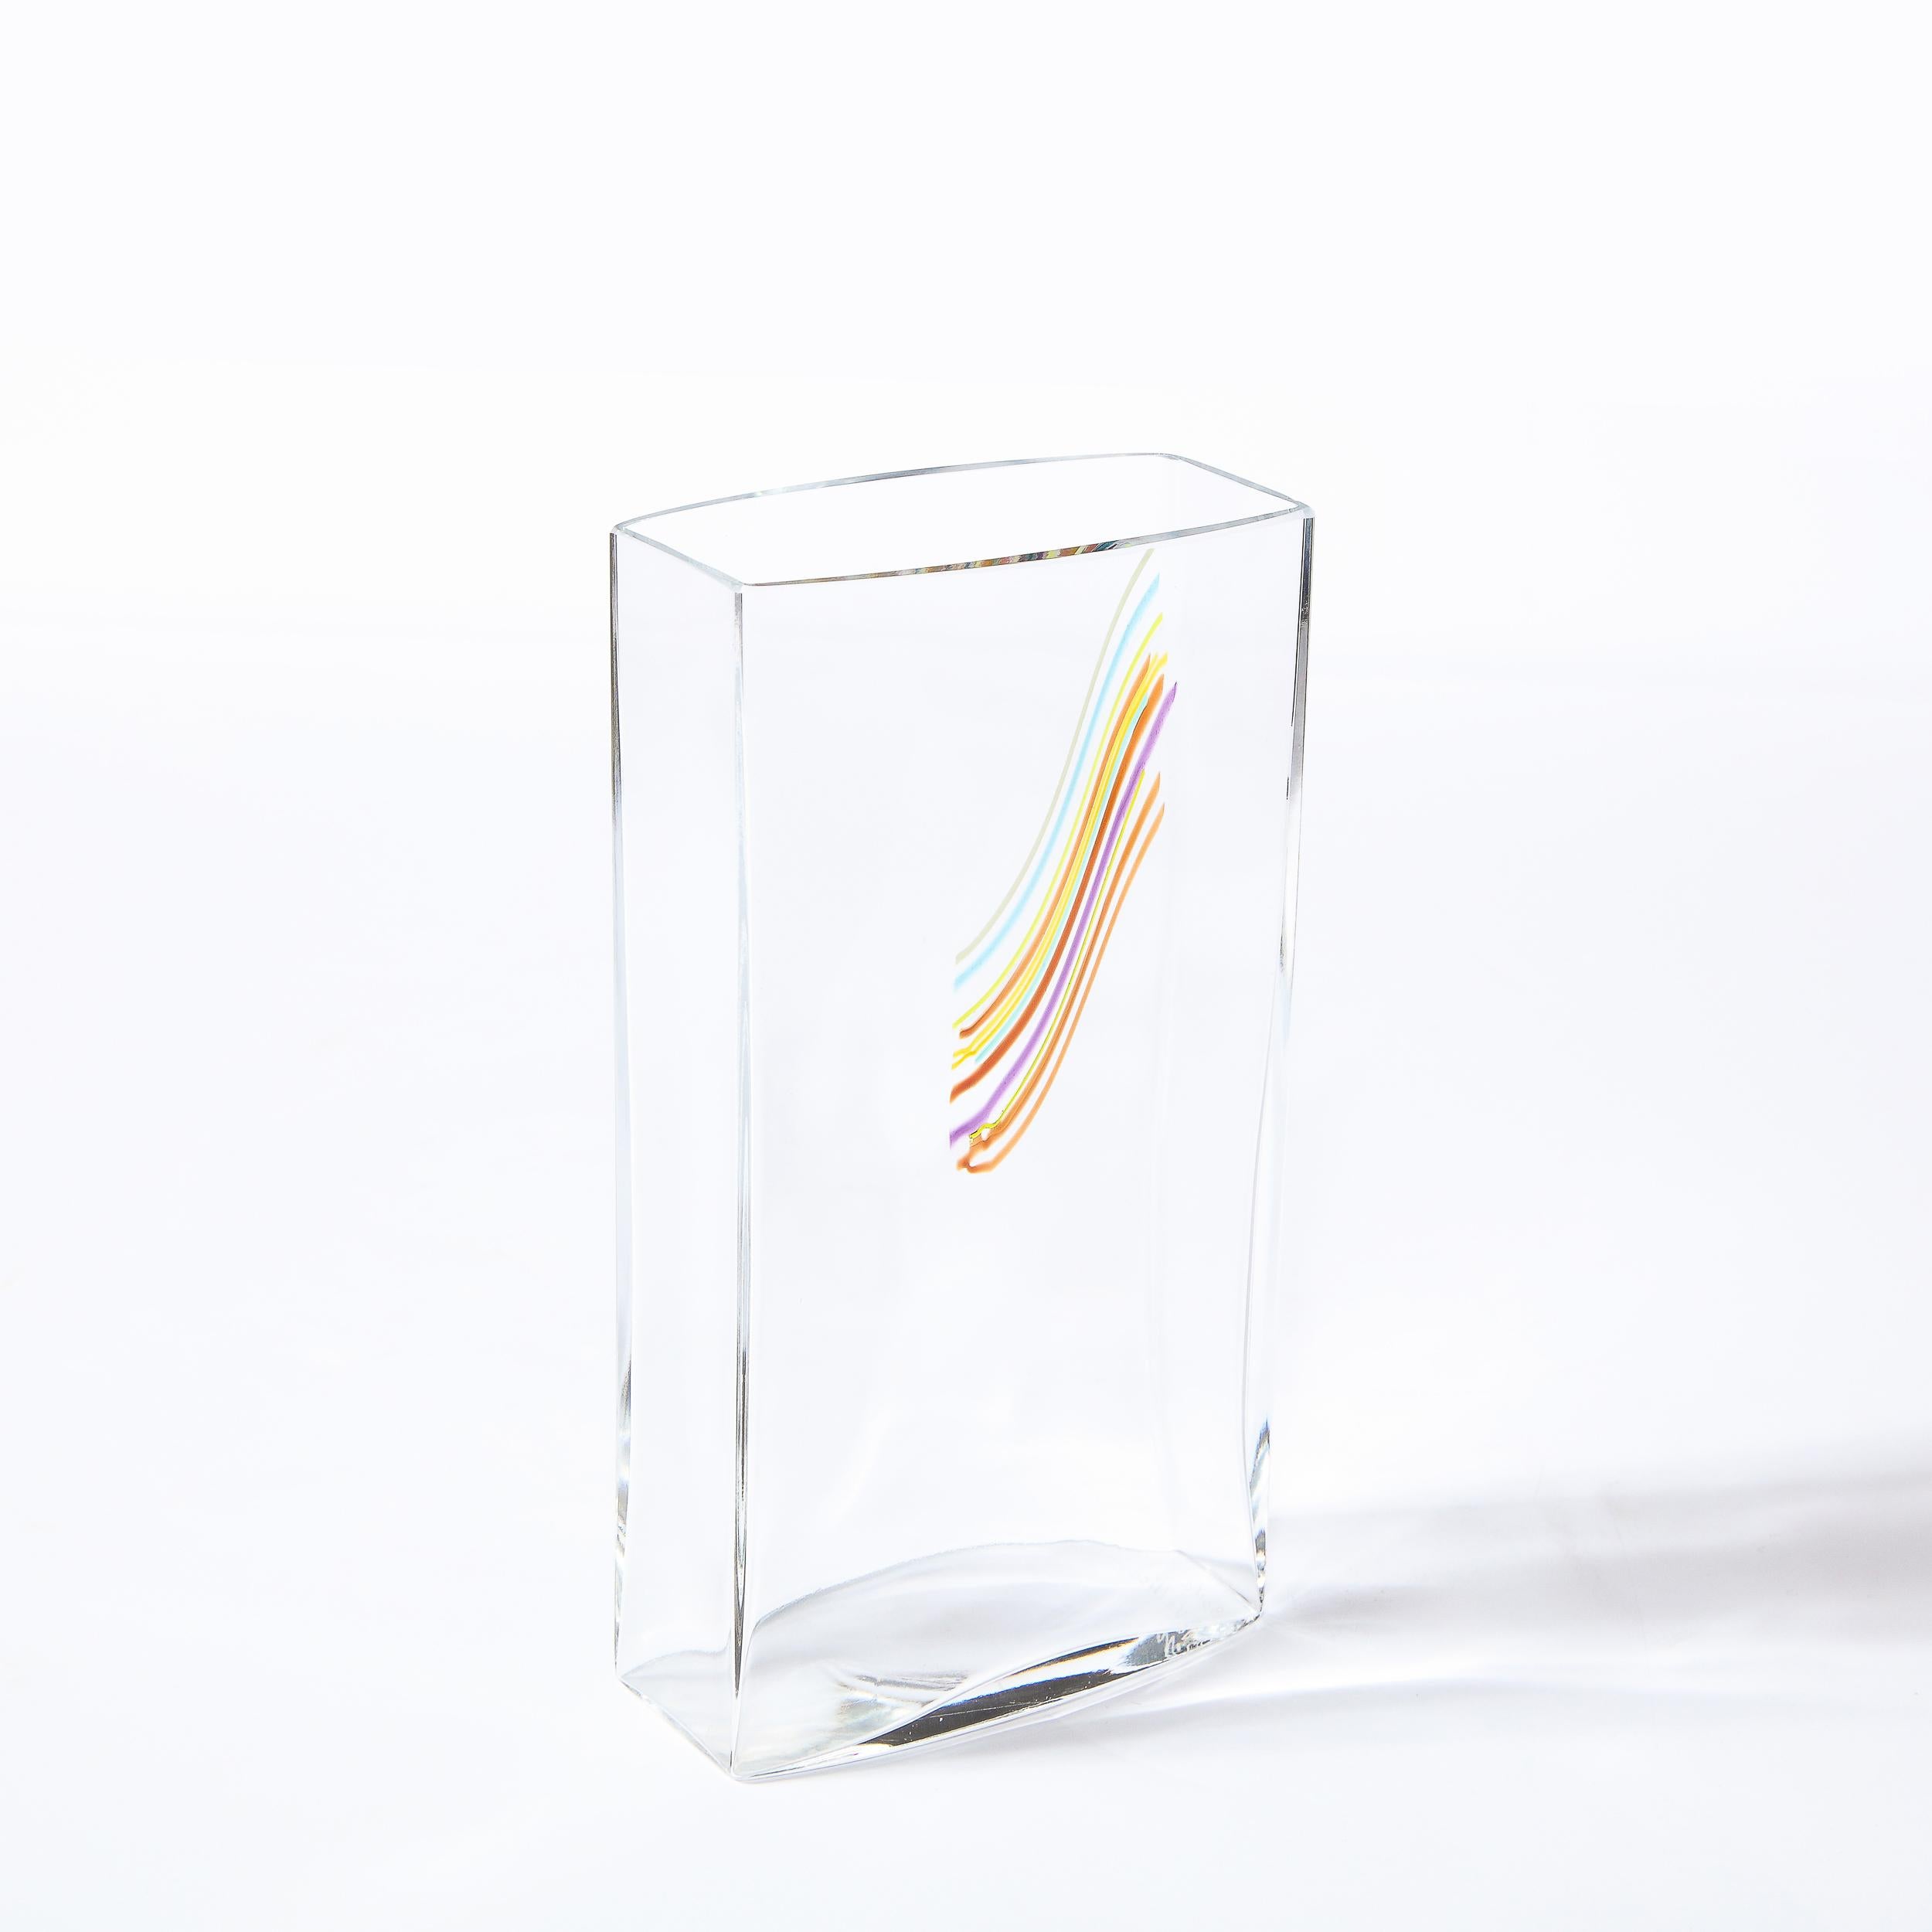 Modernist Rectangular Translucent Glass Vase by Bertil Vallien for Kosta Boda For Sale 4